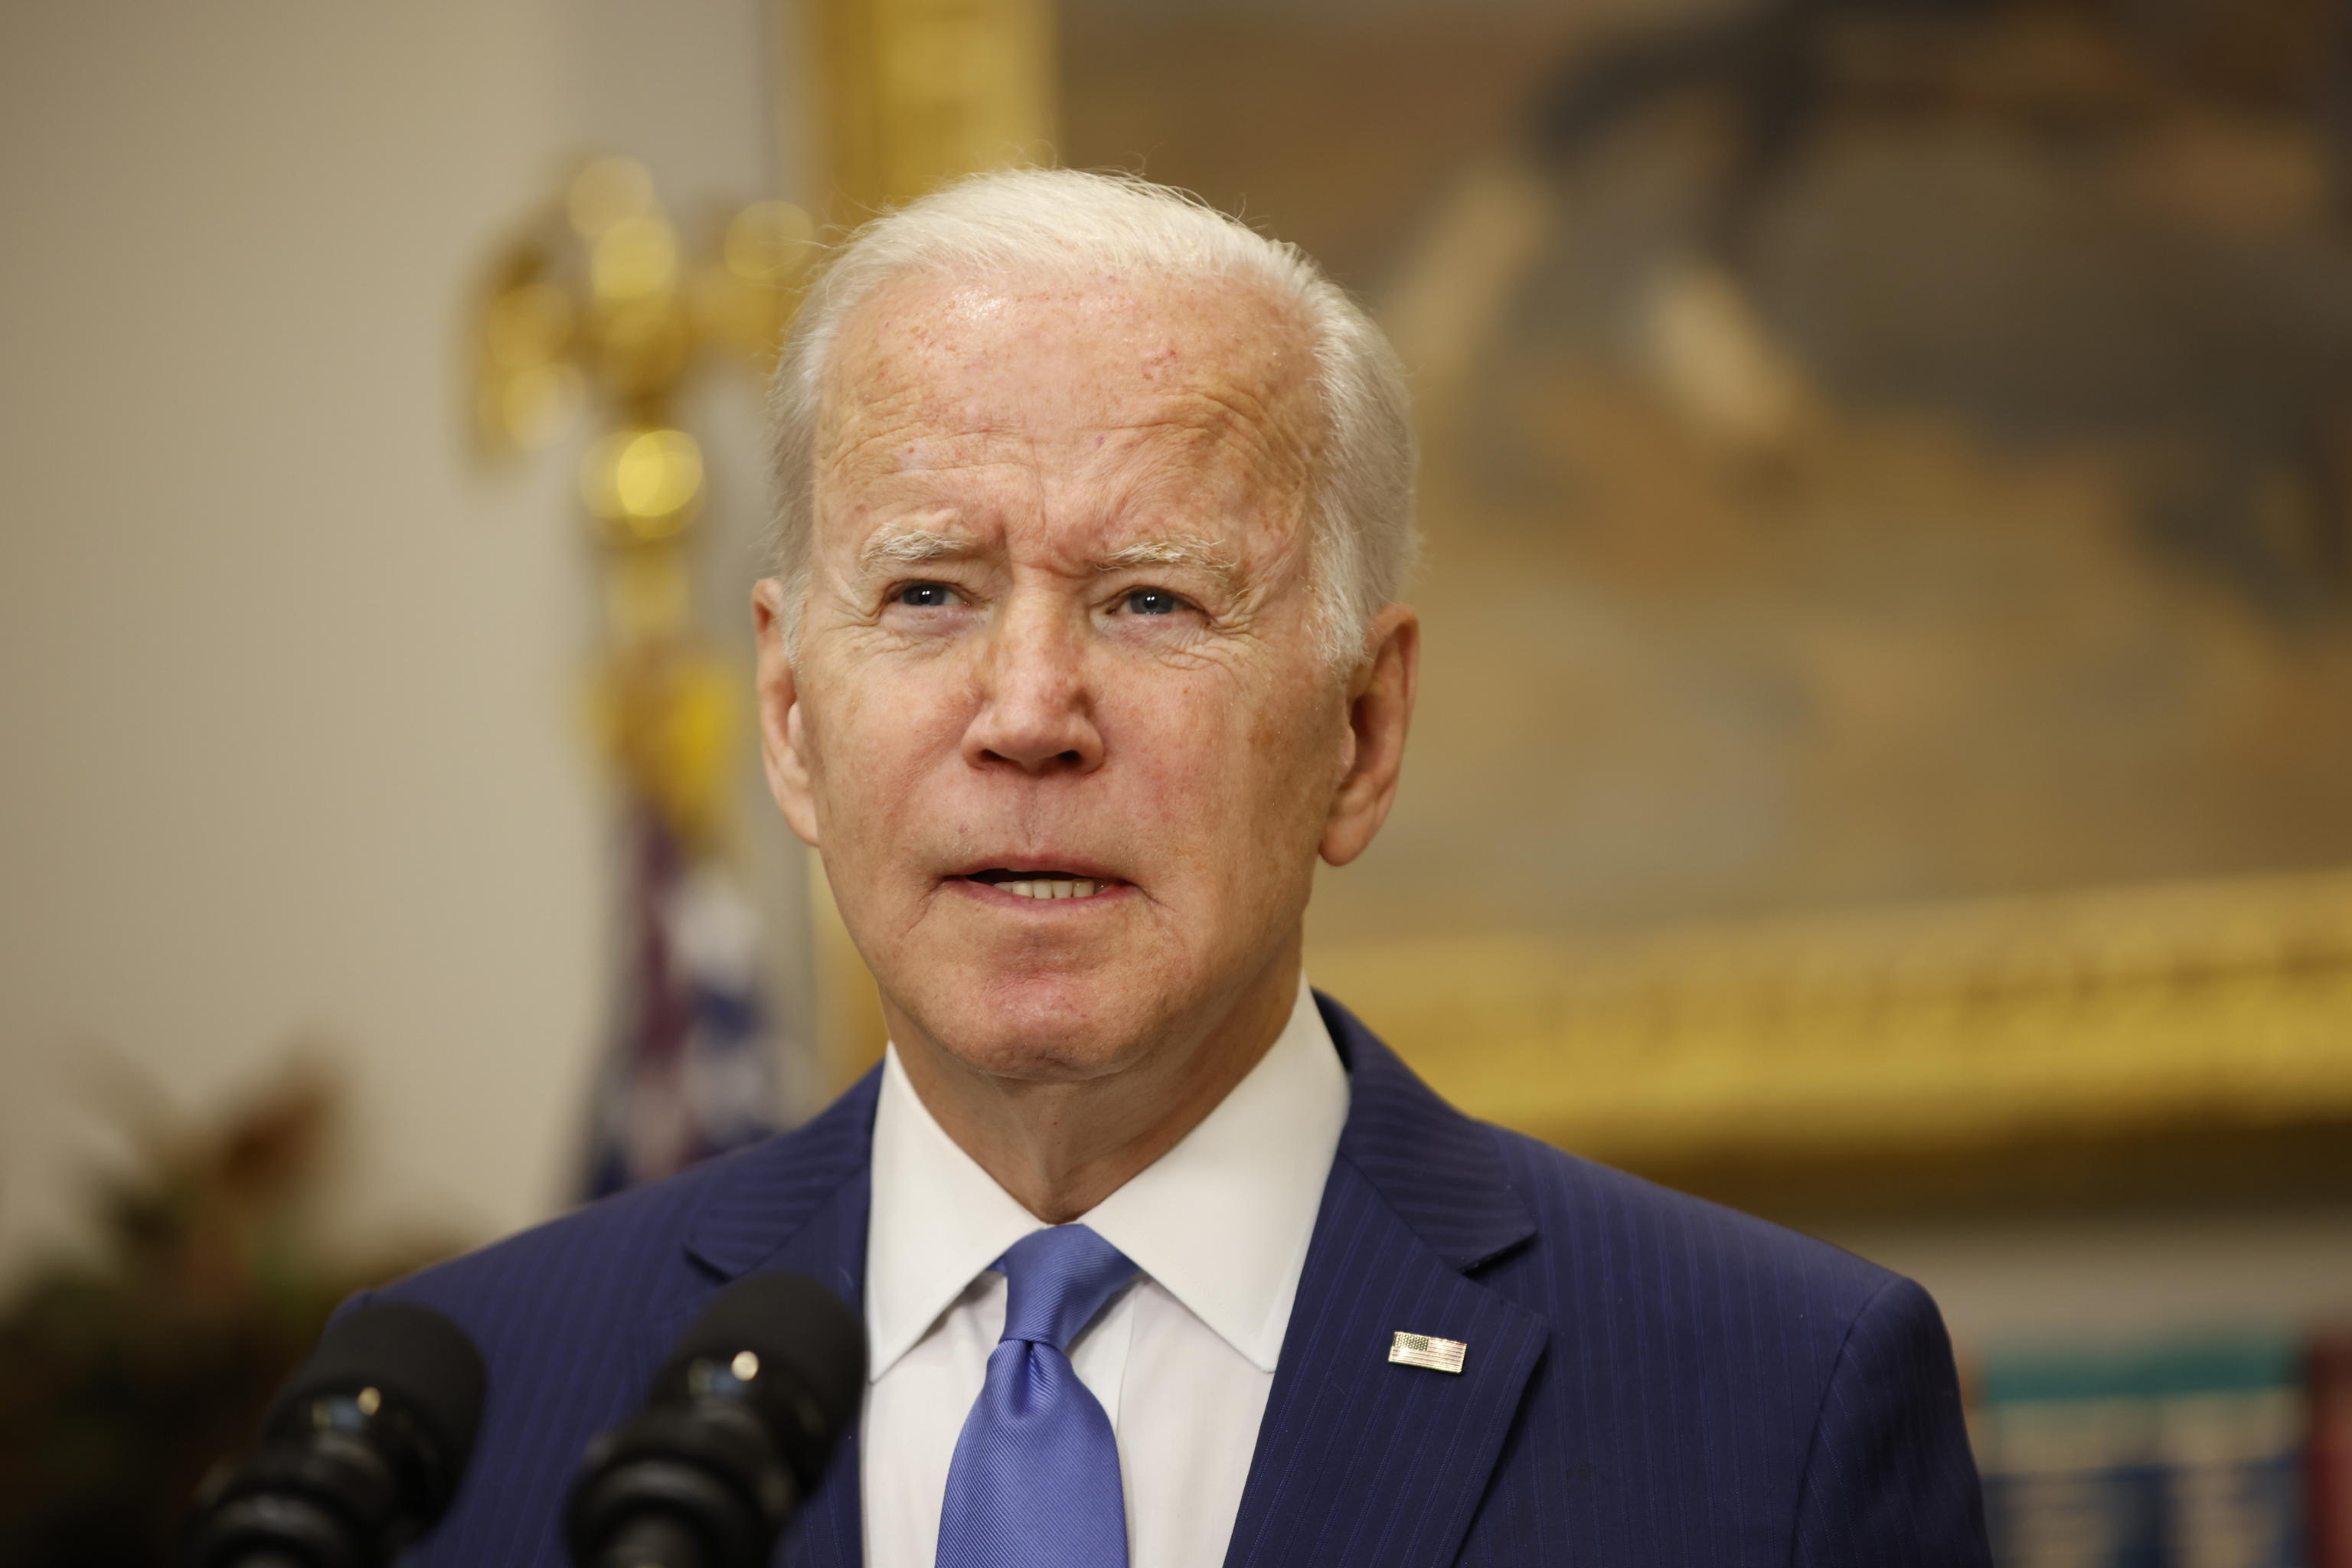 Sanzioni, Mosca allunga la lista di americani e canadesi “indesiderati”: divieto di ingresso in Russia ora anche per Joe Biden